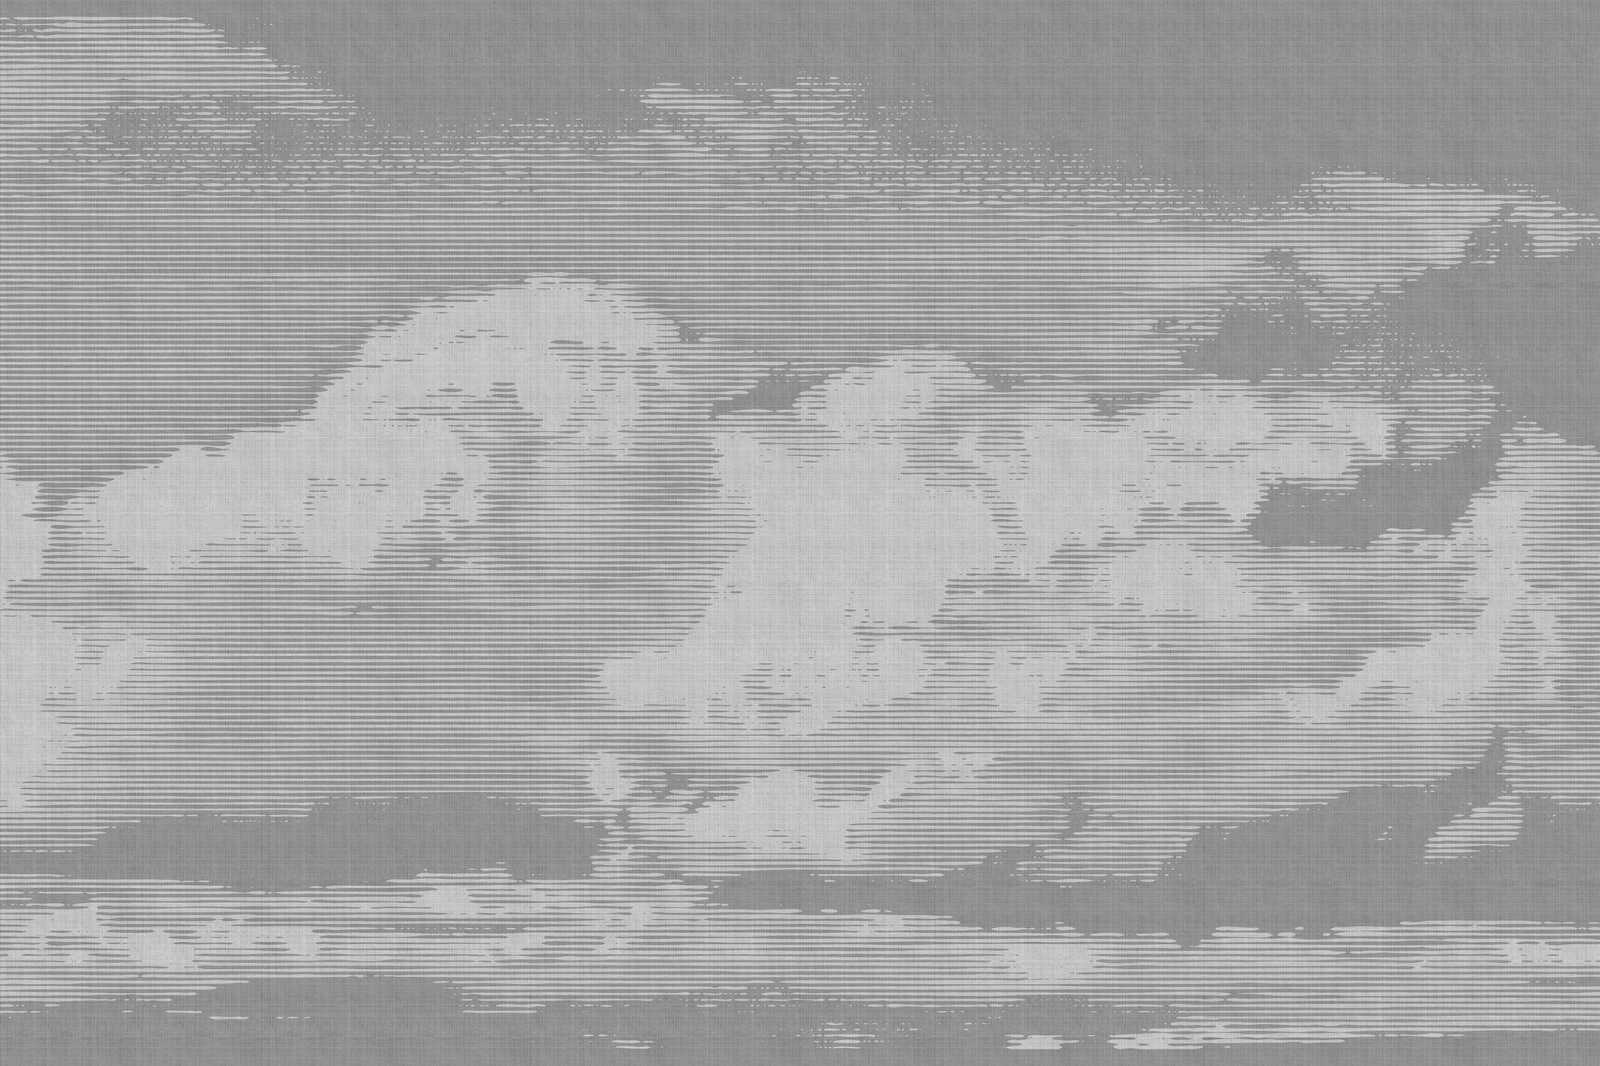             Clouds 2 - Himmlisches Leinwandbild in naturleinen Optik mit Wolkenmotiv – 0,90 m x 0,60 m
        